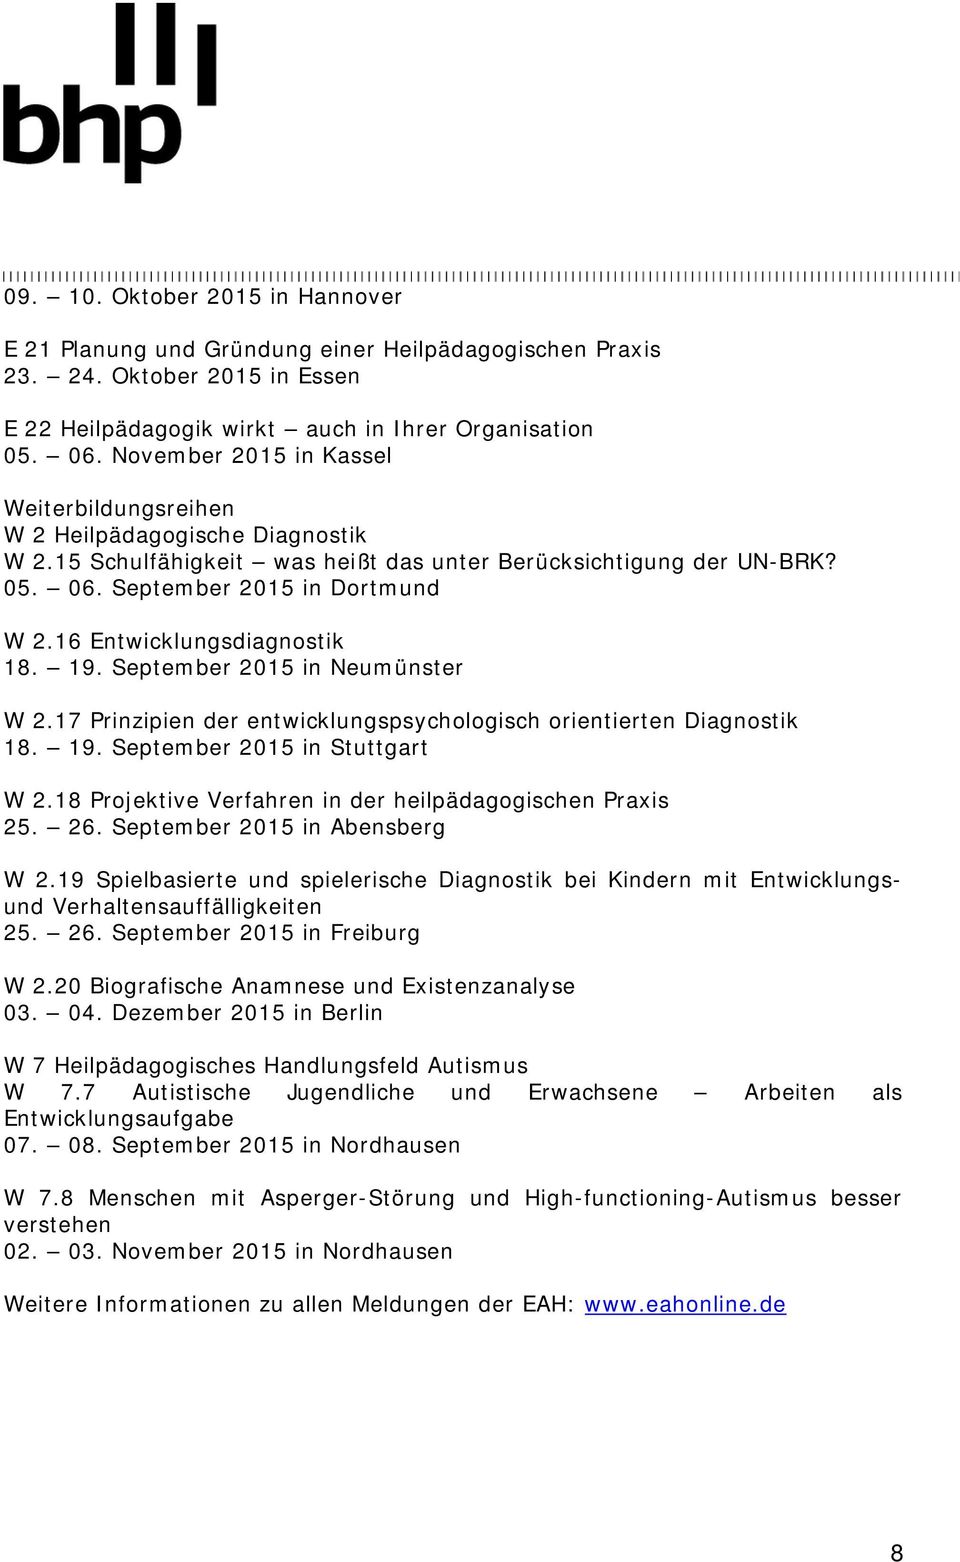 16 Entwicklungsdiagnostik 18. 19. September 2015 in Neumünster W 2.17 Prinzipien der entwicklungspsychologisch orientierten Diagnostik 18. 19. September 2015 in Stuttgart W 2.